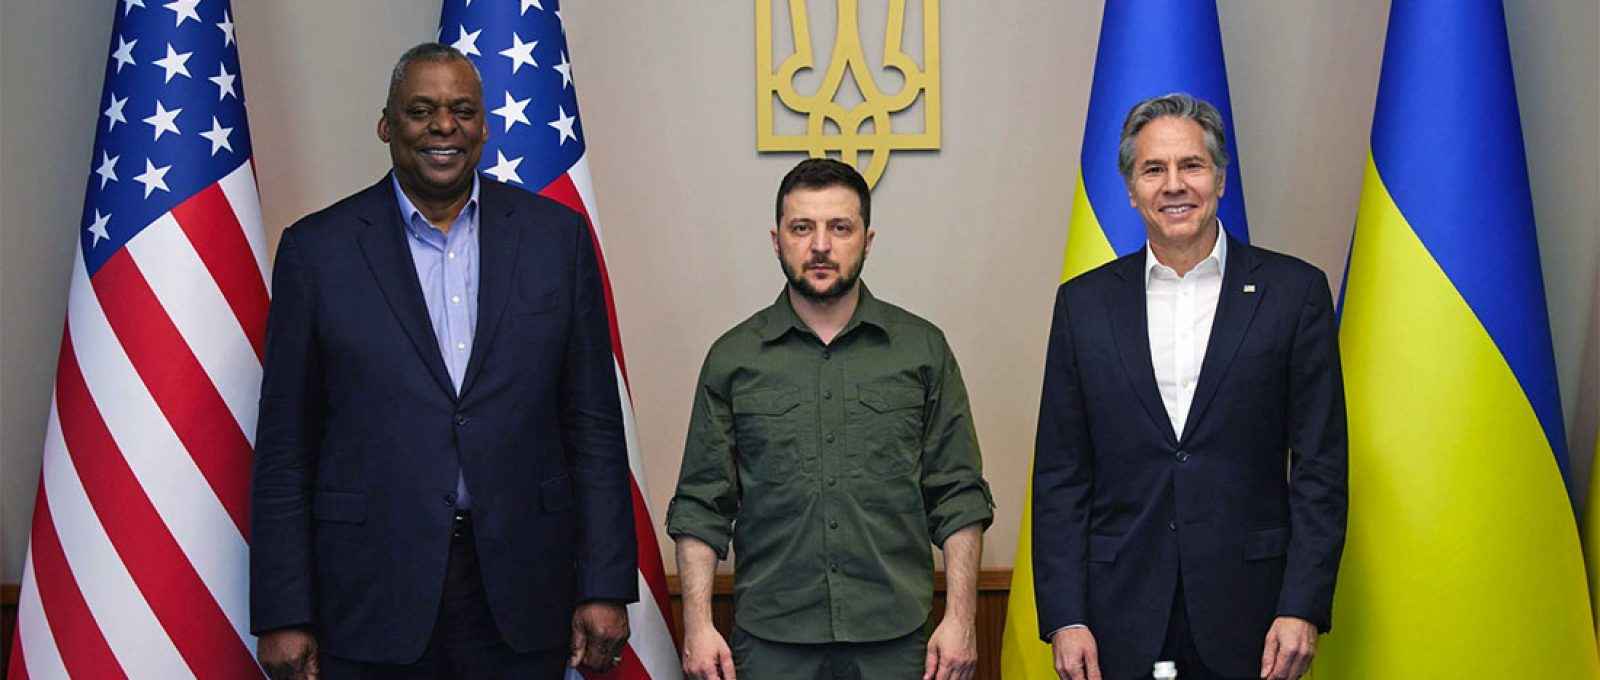 O secretário de Defesa dos EUA, Lloyd Austin, o presidente ucraniano, Volodymyr Zelensky, e o secretário de Estado dos EUA, Antony Blinken, em Kiev, Ucrânia, em 24 de abril de 2022 (Agência de Imprensa Presidencial da Ucrânia via Getty Images).